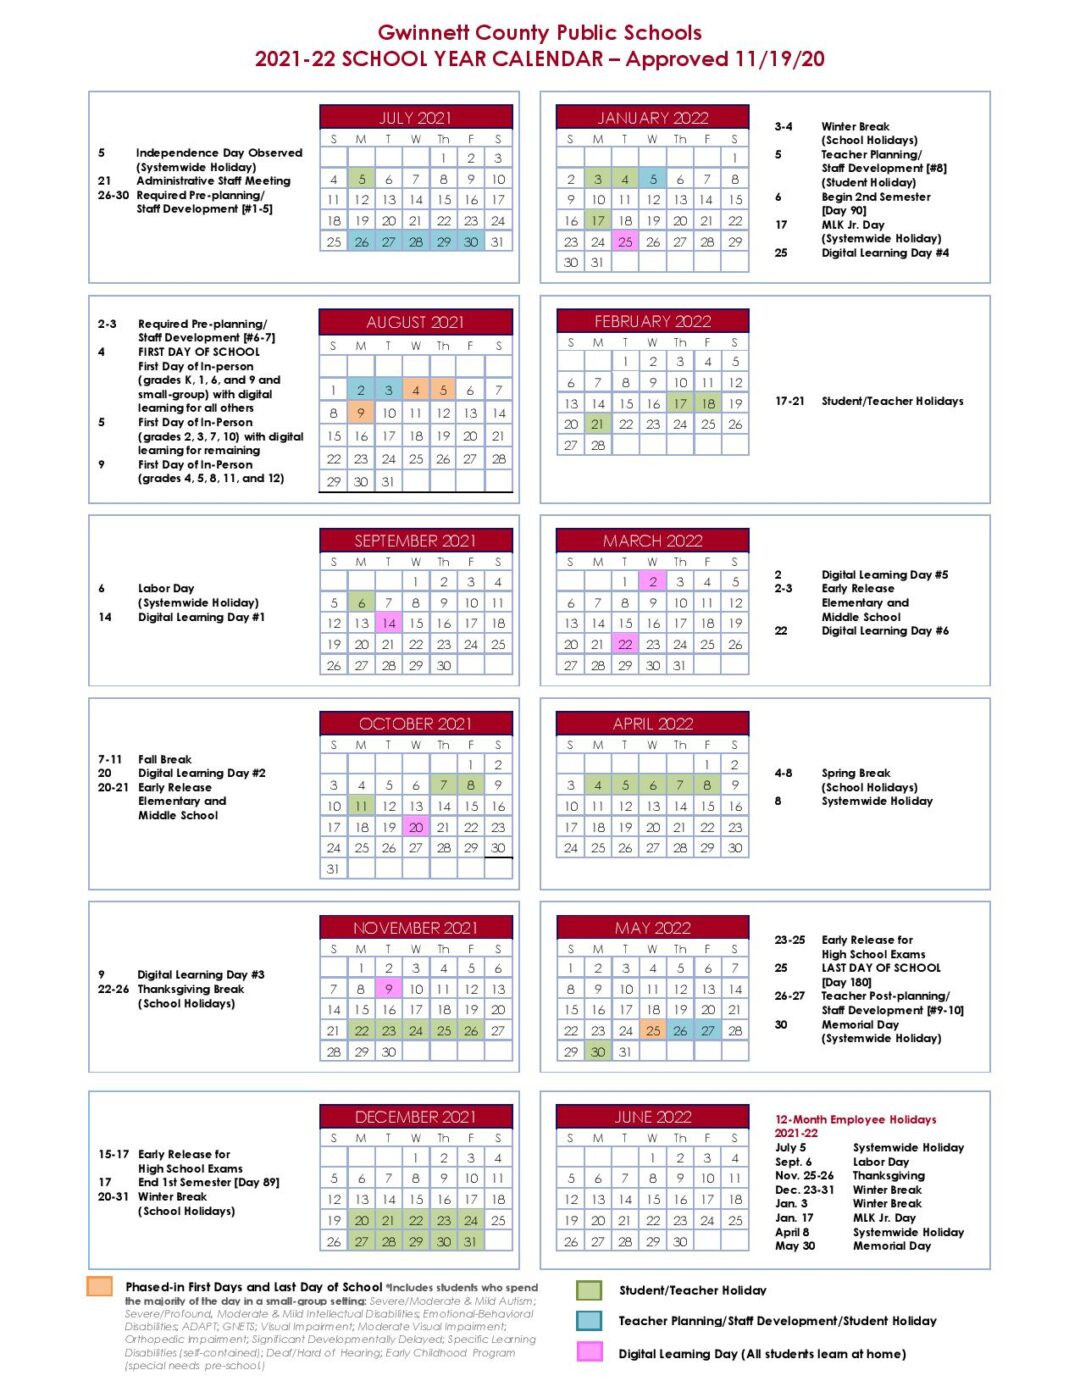 Gwinnett County Public Schools Calendar 2021-2022-2021 Calendar 2022 Printable School Year